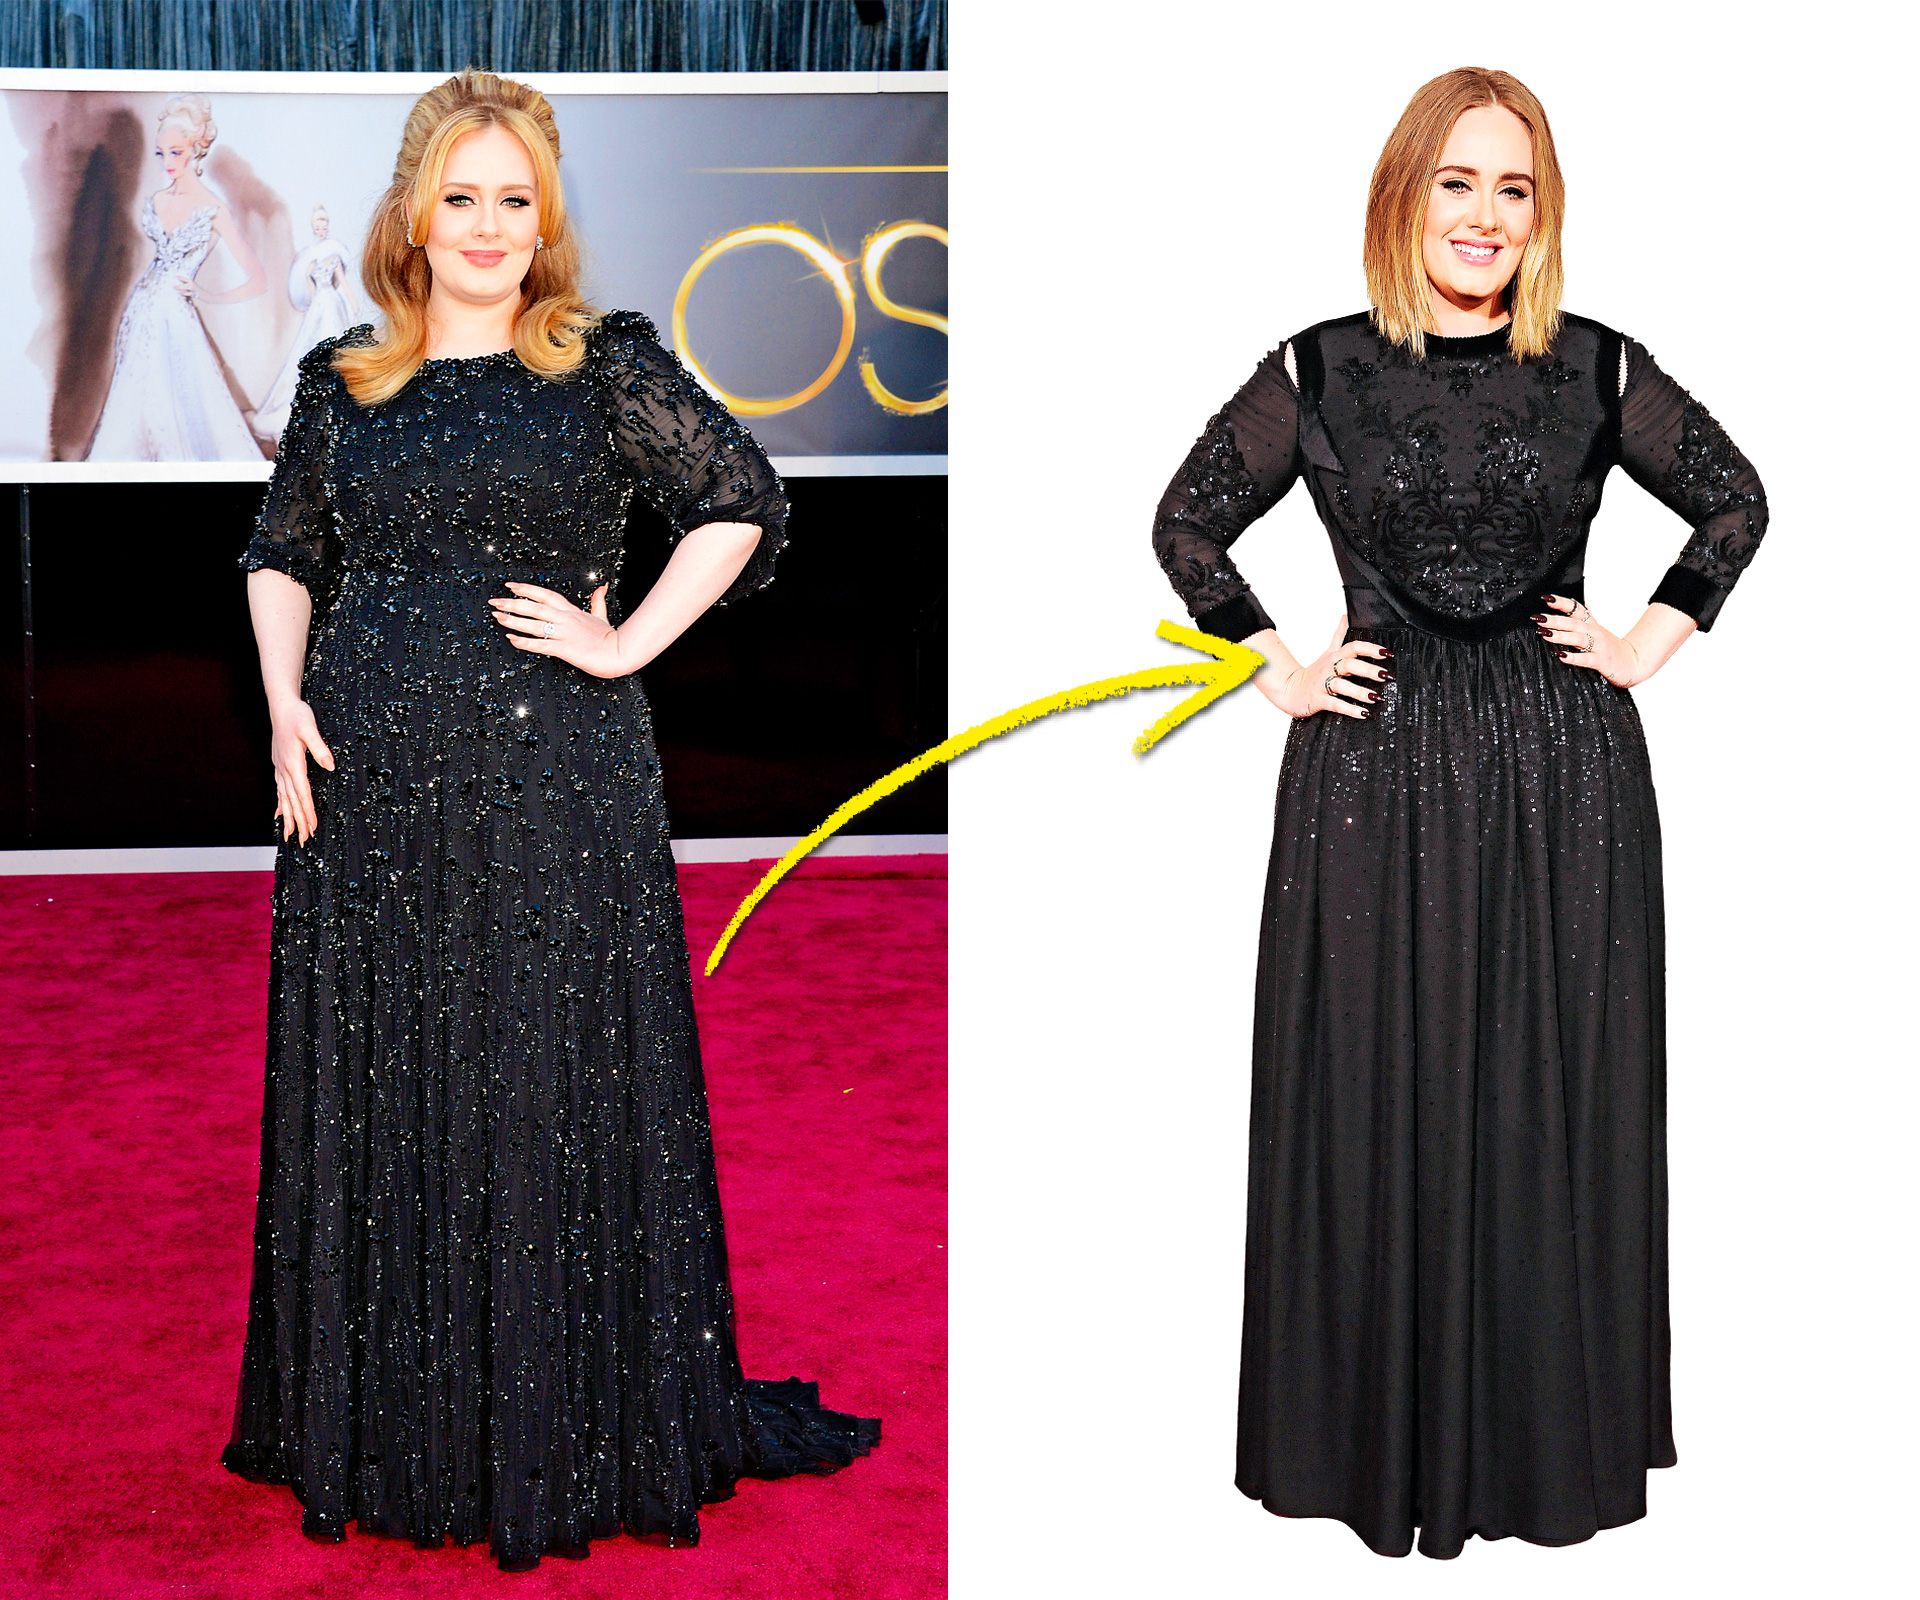 The diet secrets behind Adele’s slimdown